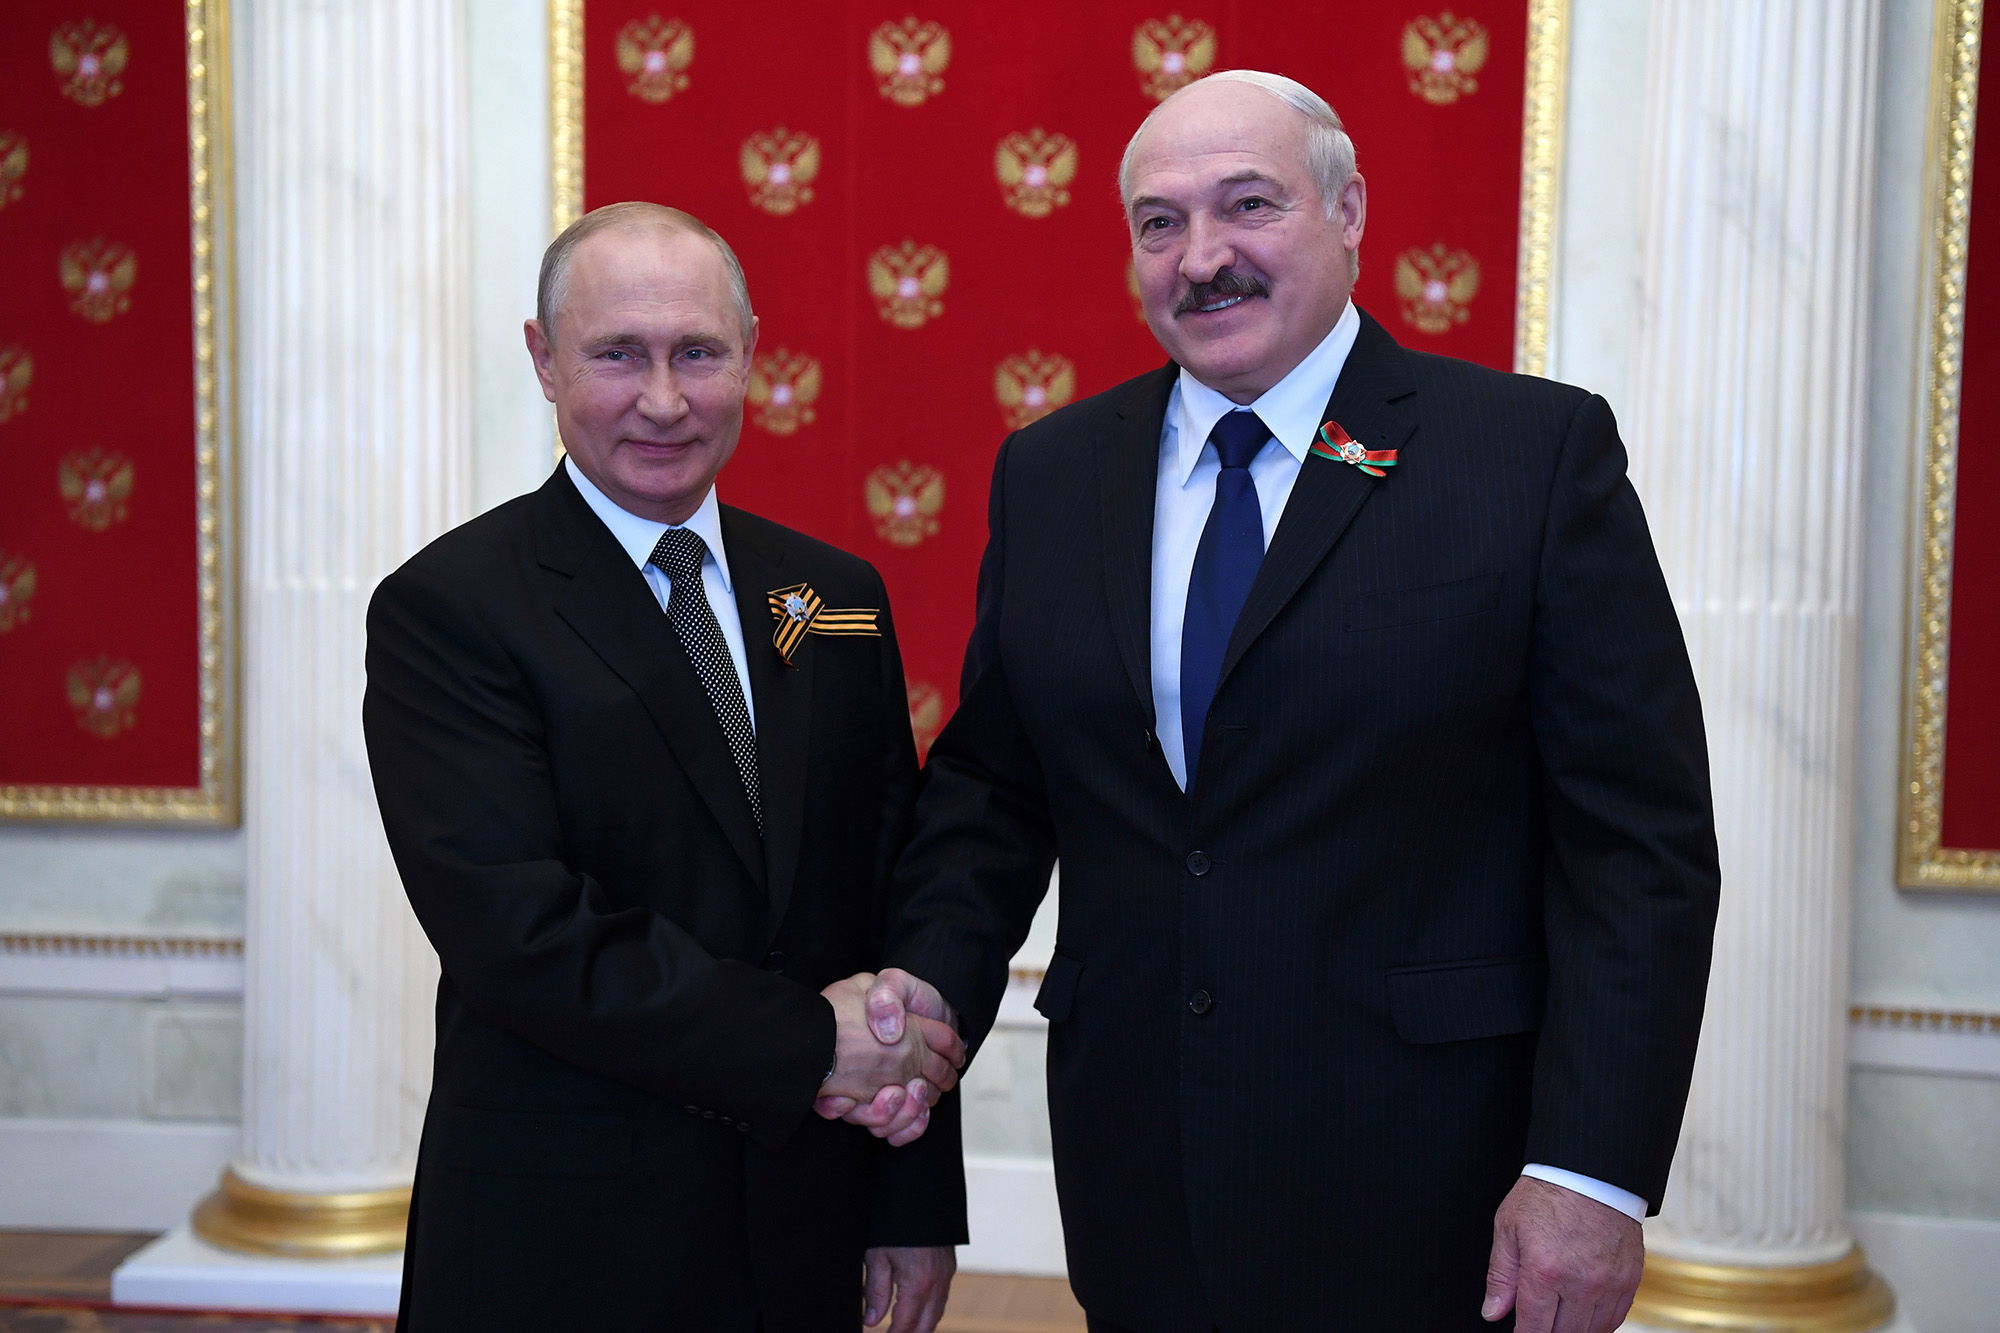 Der russische Präsident Wladimir Putin (L) und der belarussische Präsident Alexander Lukaschenko geben sich die Hand, während sie während einer Zeremonie im Kreml, Moskau, Russland, am 24. Juni 2020 für ein Foto posieren.